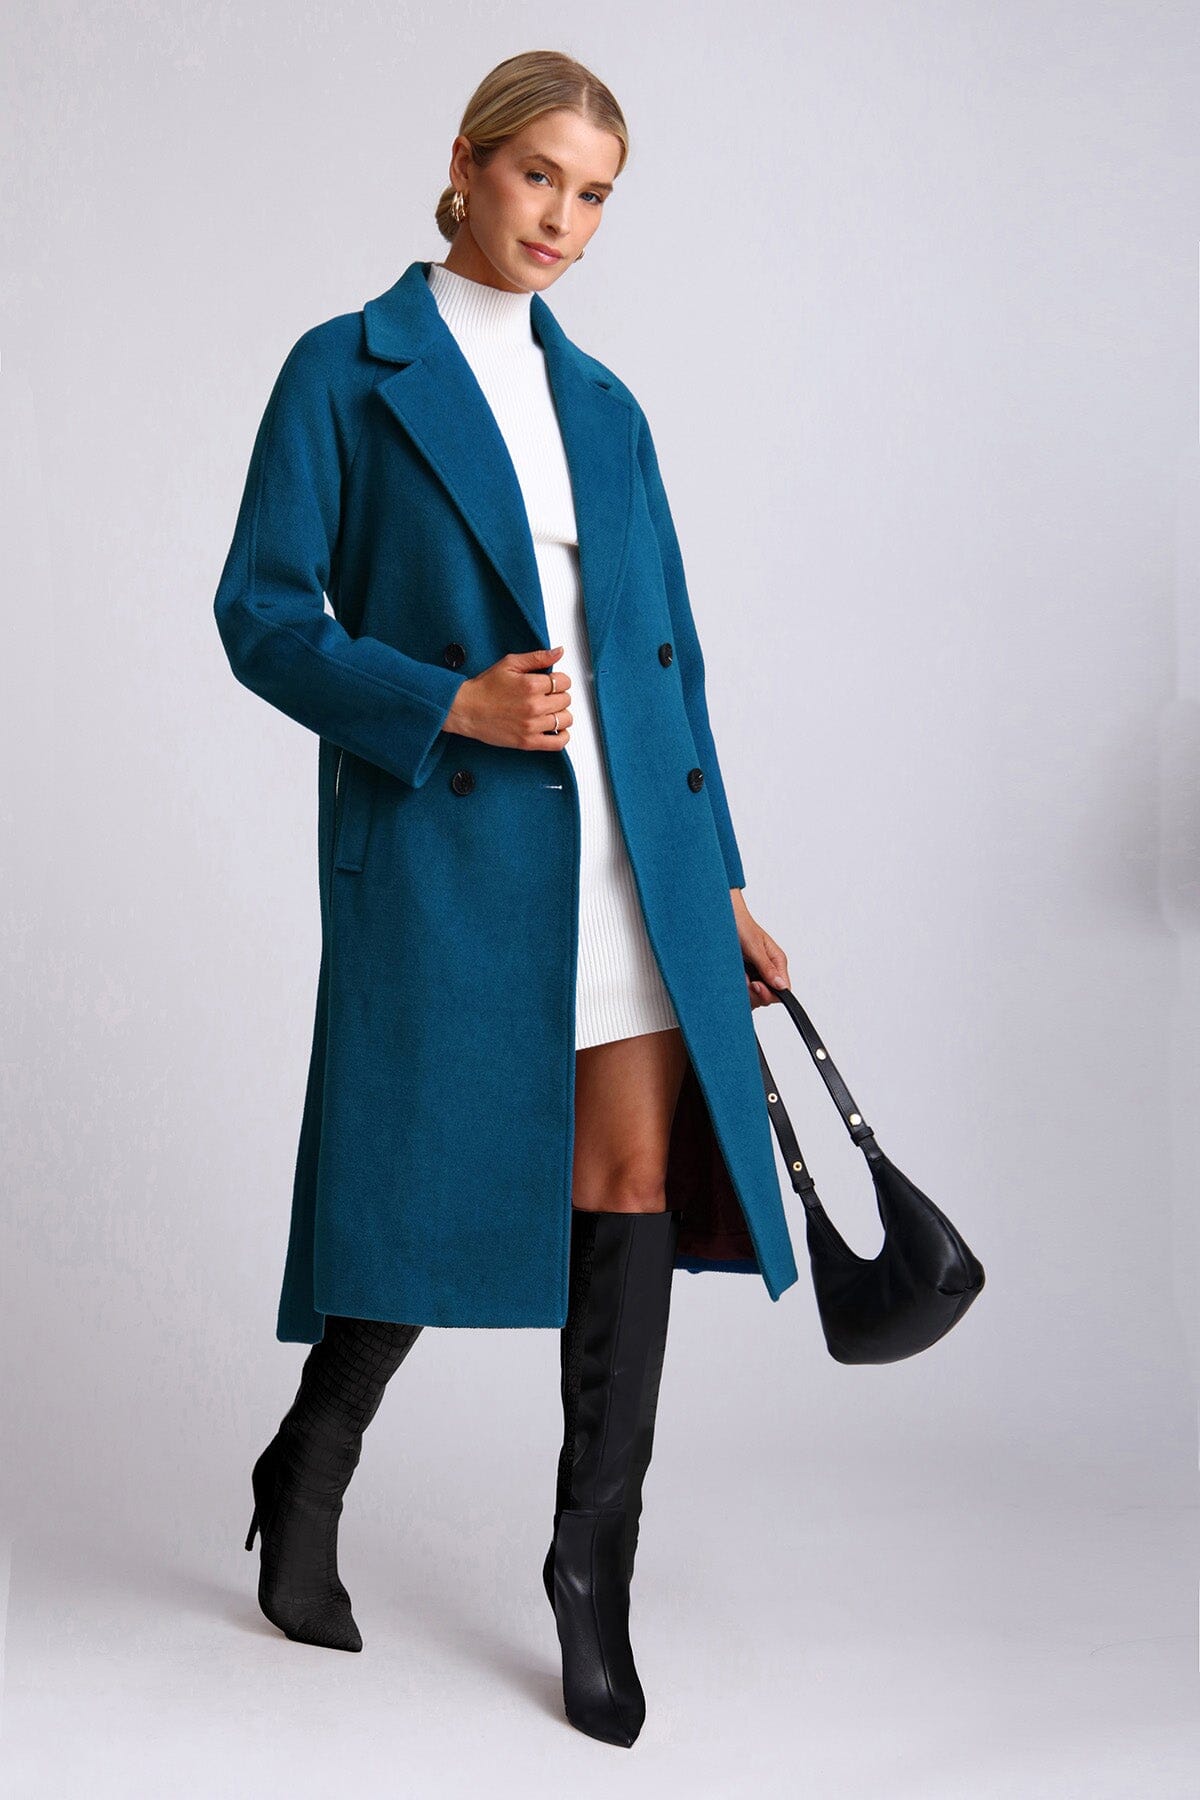 Mykonos blue wool blend belted walker coat - figure flattering dressy date night coats jackets for ladies